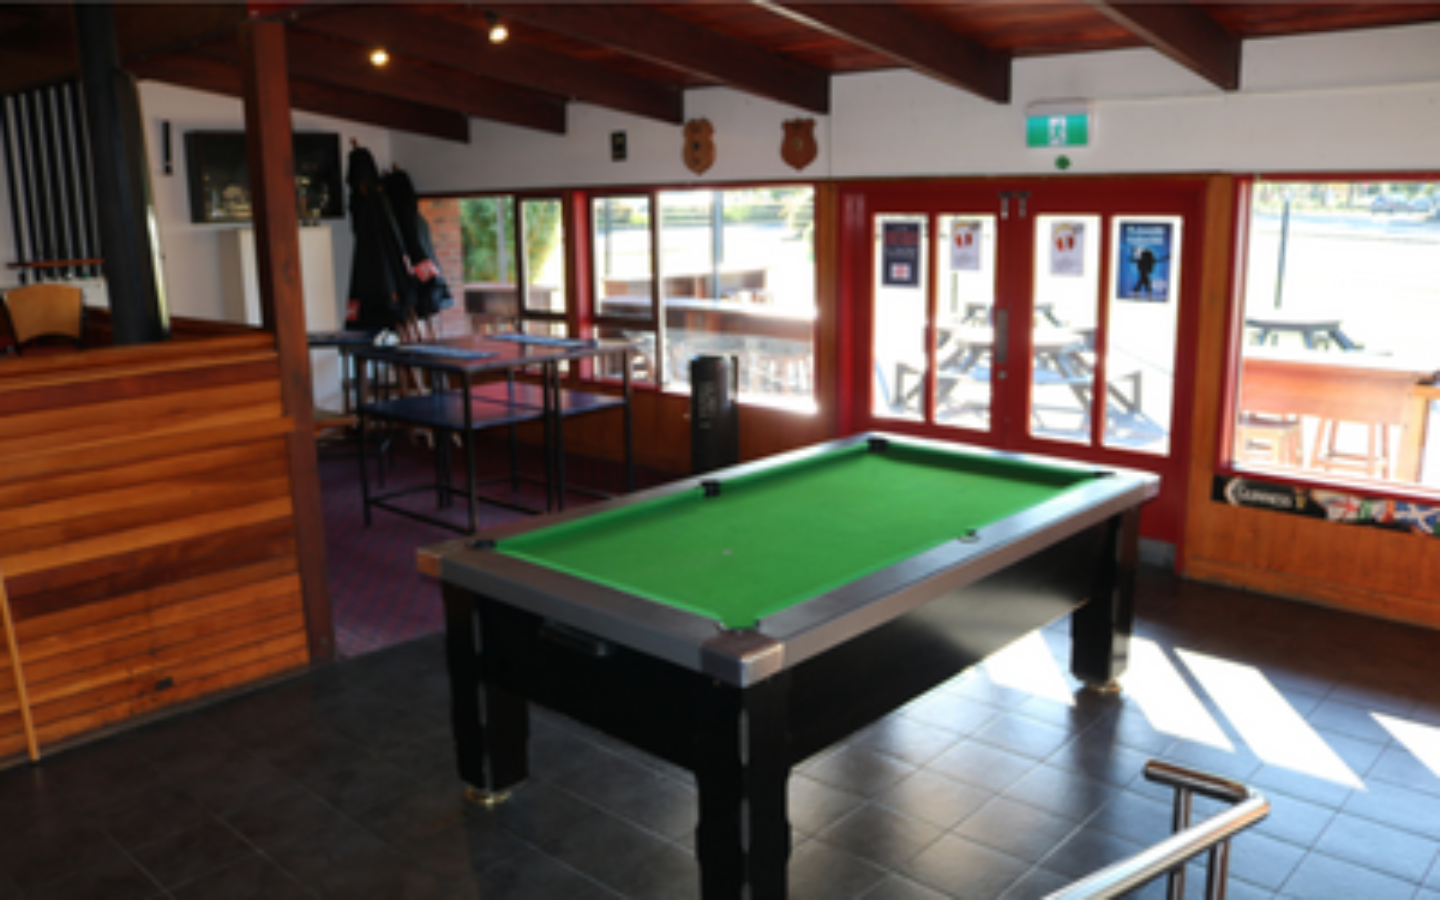 Te Atatu Tavern interior featured